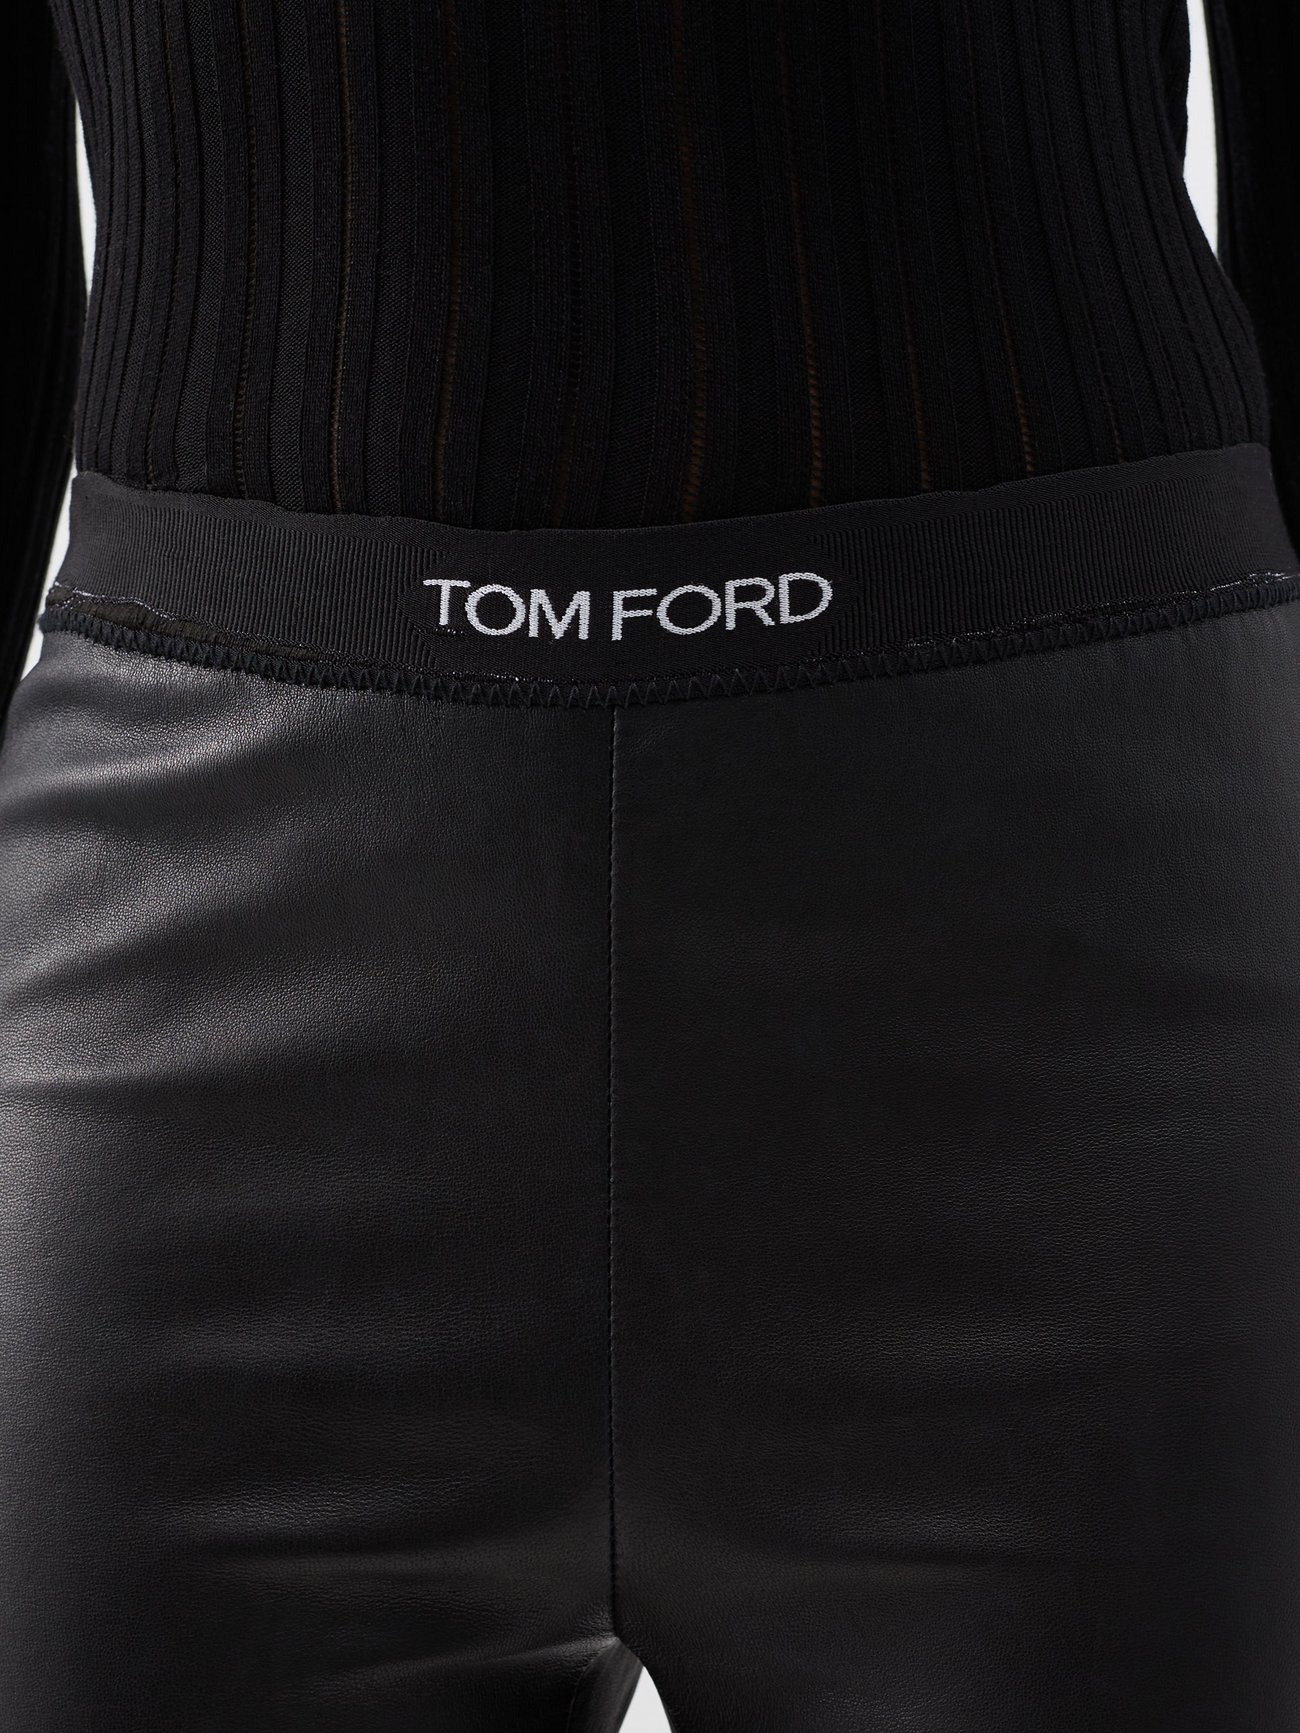 Tom Ford Jacquard Leggings in Black